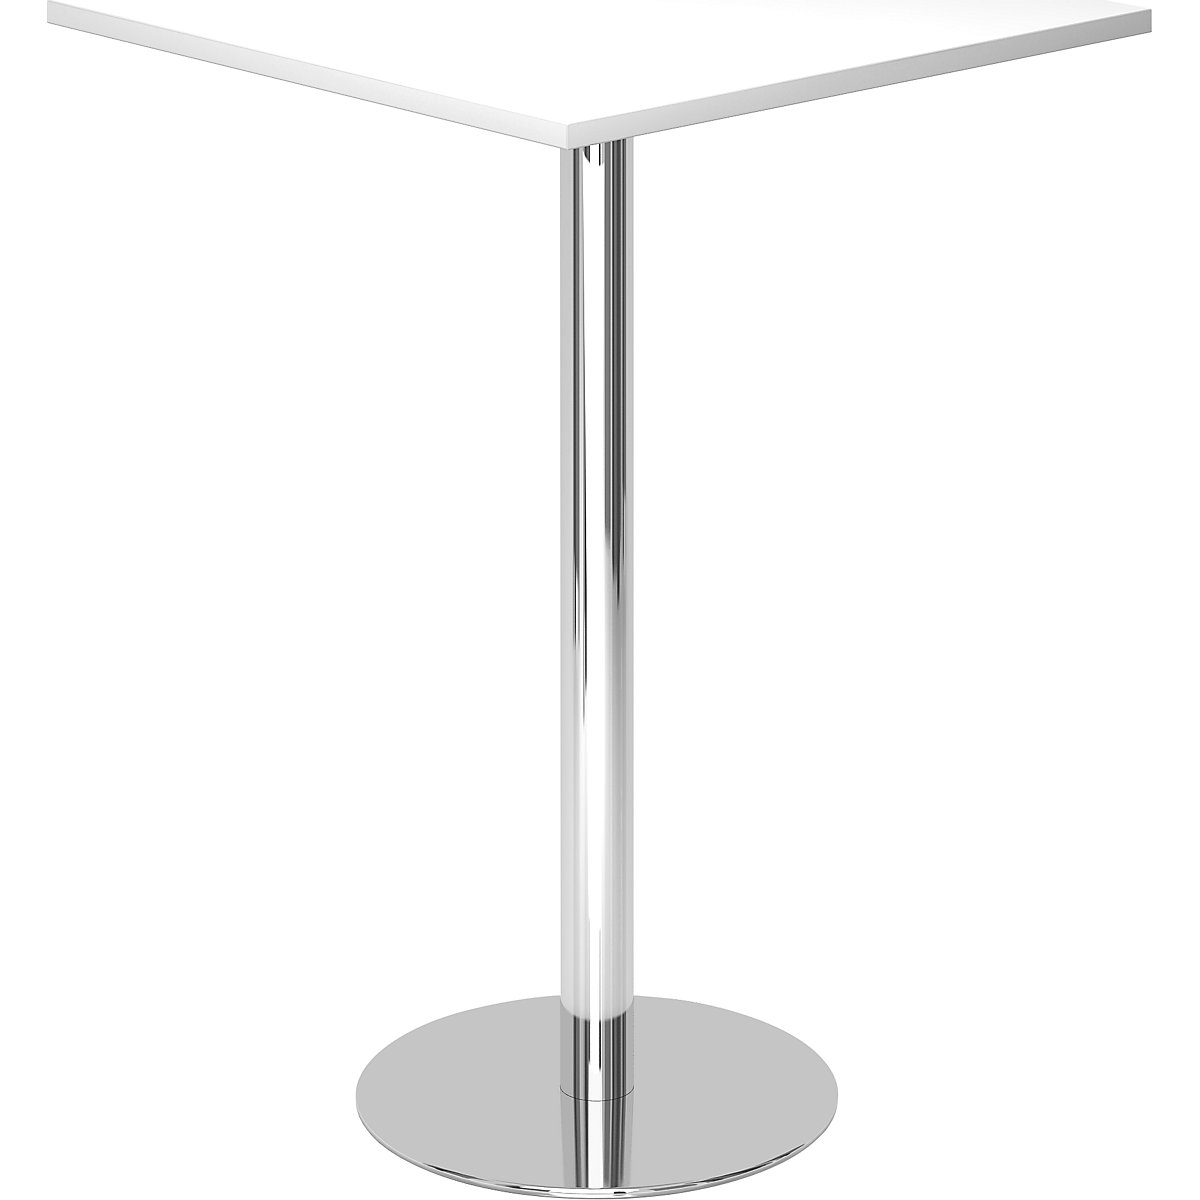 Visoki stol, DxŠ 800 x 800 mm, visina 1116 mm, kromirano postolje, ploča u bijeloj boji-3